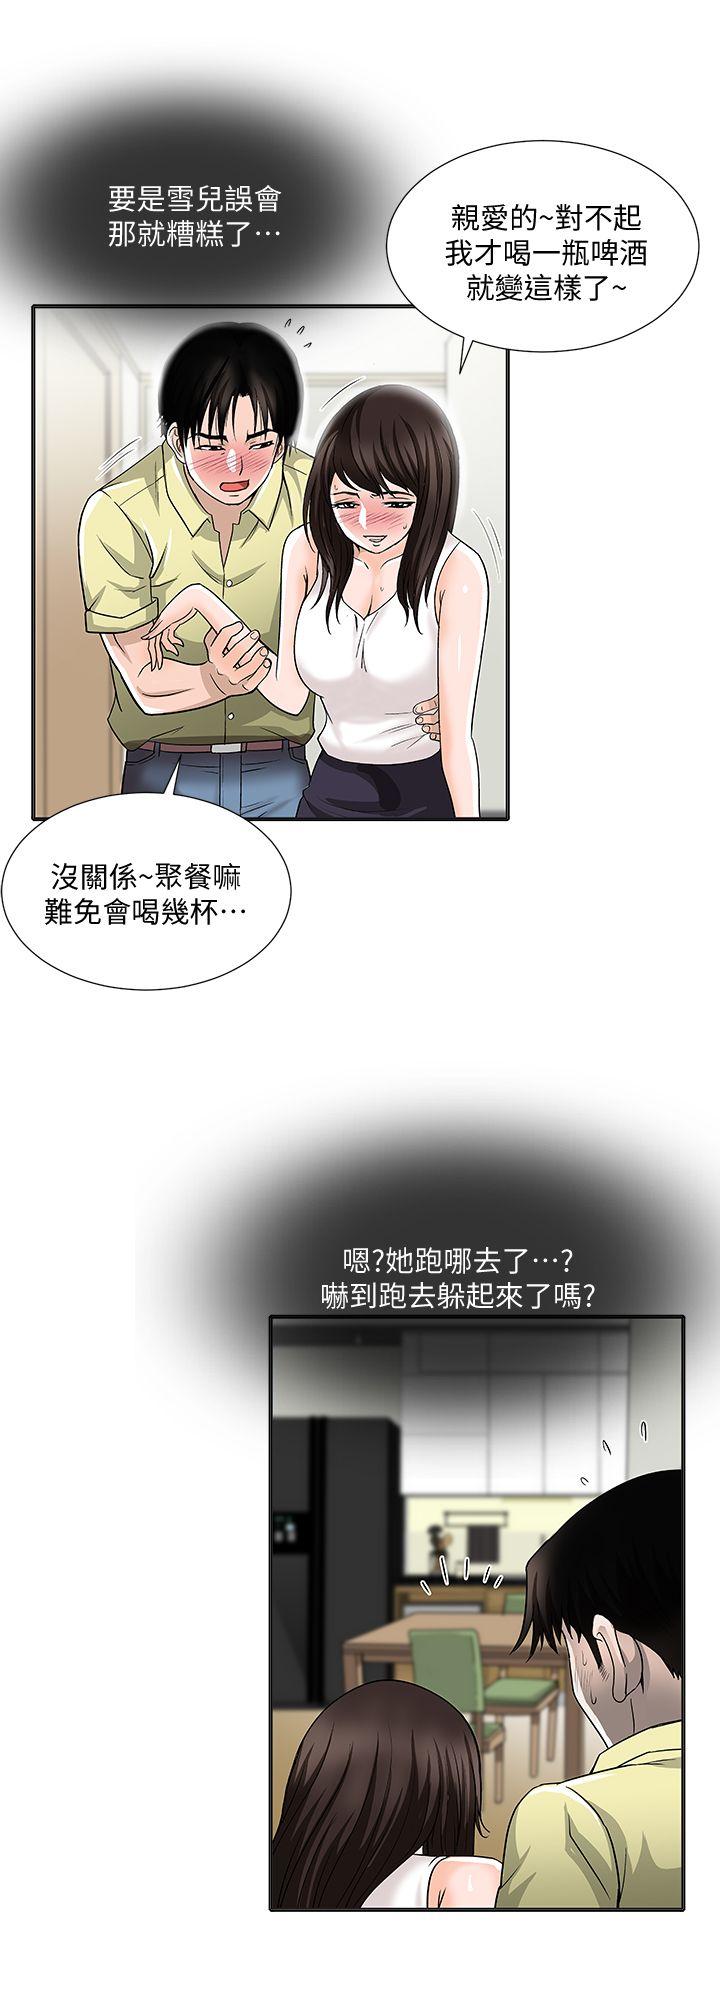 韩国污漫画 別人的老婆 第2话-躲在衣柜的女人 19